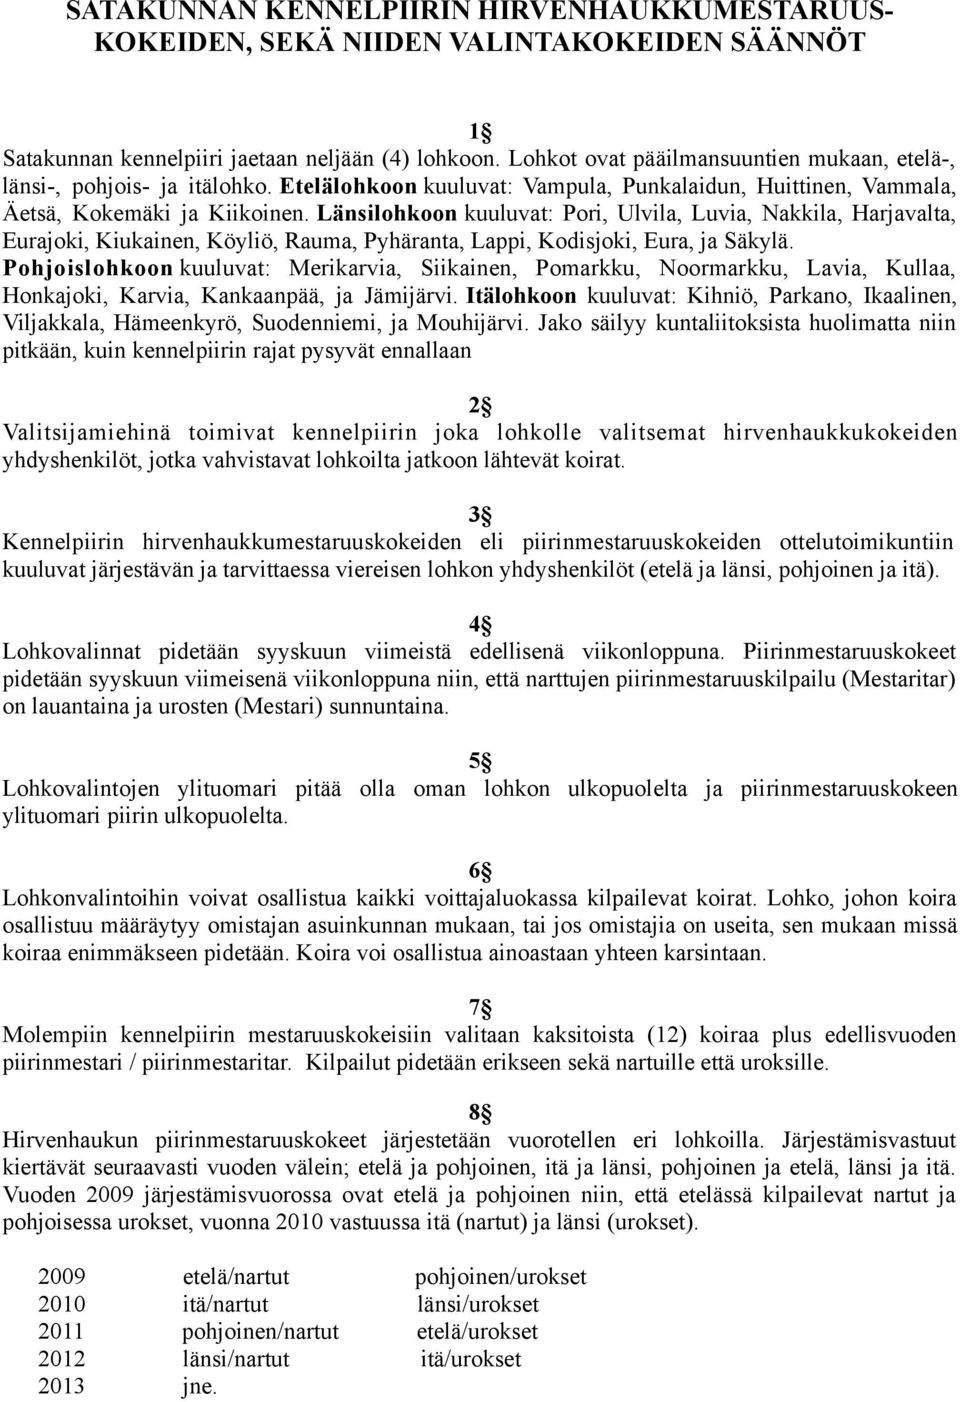 Länsilohkoon kuuluvat: Pori, Ulvila, Luvia, Nakkila, Harjavalta, Eurajoki, Kiukainen, Köyliö, Rauma, Pyhäranta, Lappi, Kodisjoki, Eura, ja Säkylä.